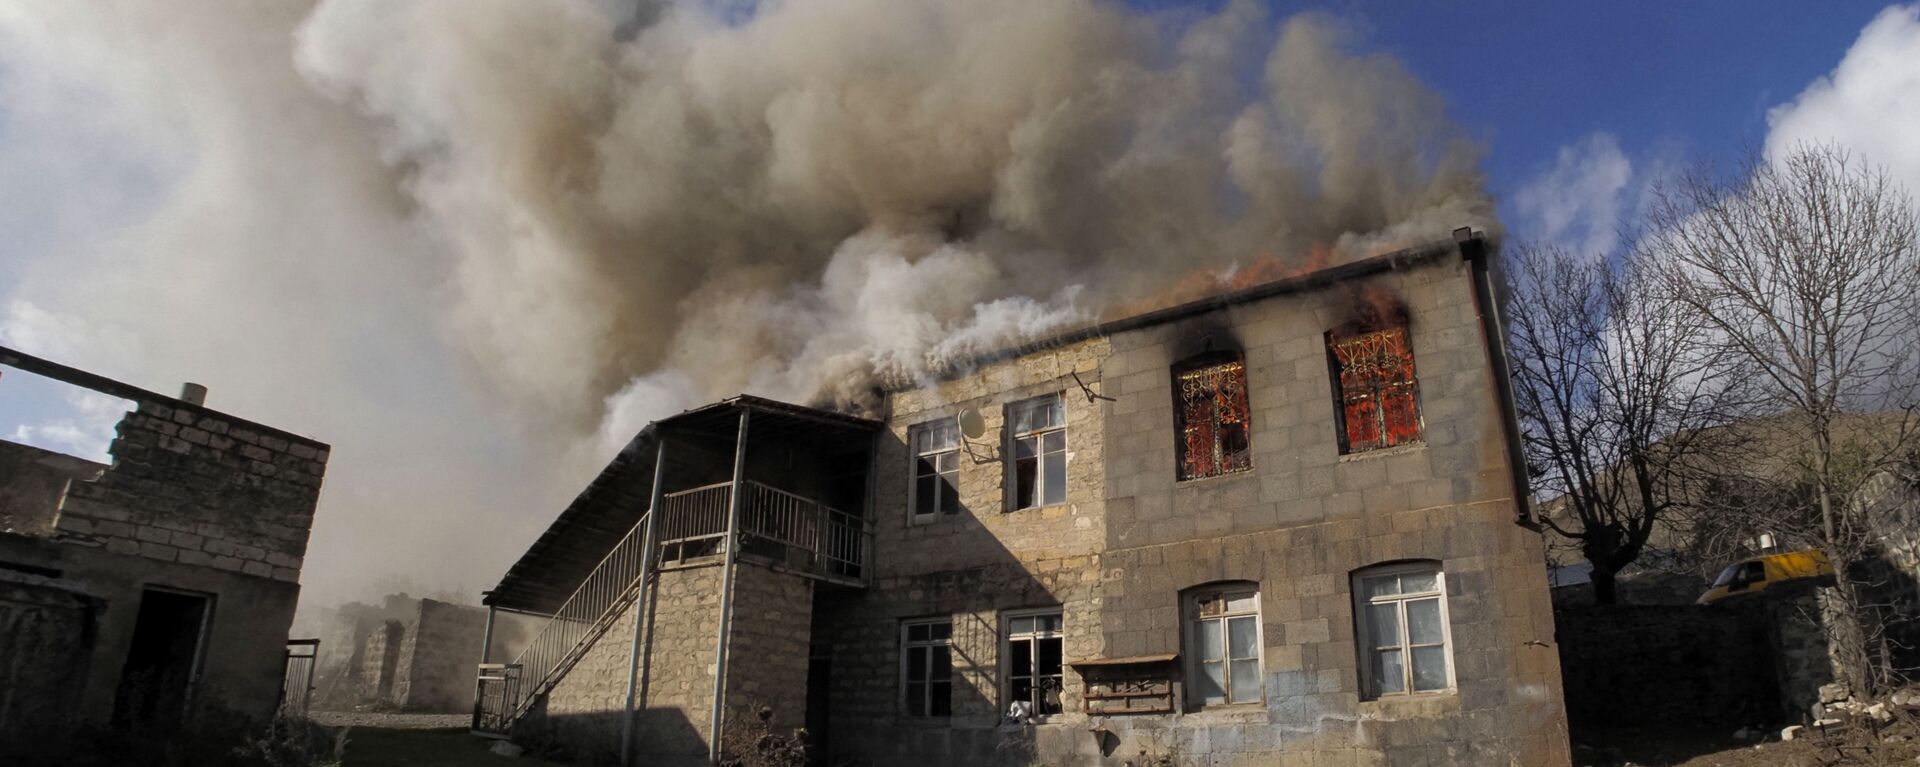 Una casa en llamas en la región de Kalbajar, Nagorno Karabaj - Sputnik Mundo, 1920, 24.06.2021